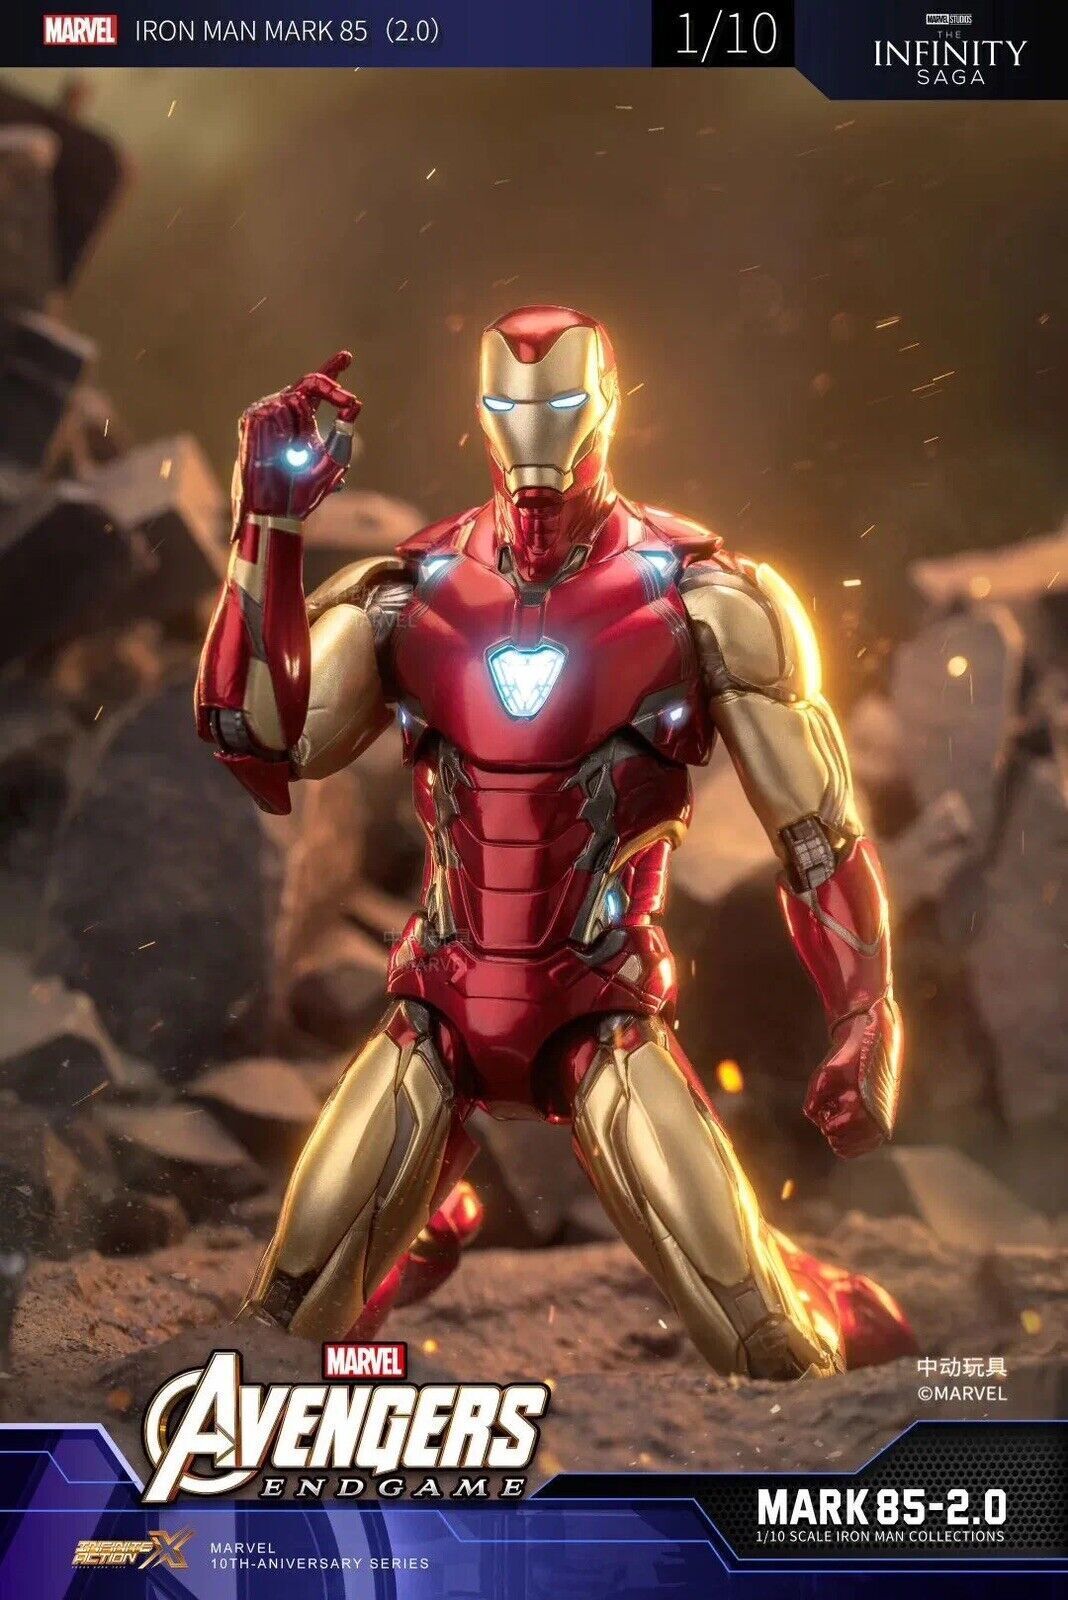 ZD TOYS Armored MK85 Iron Man Avengers Endgame Marvel 7